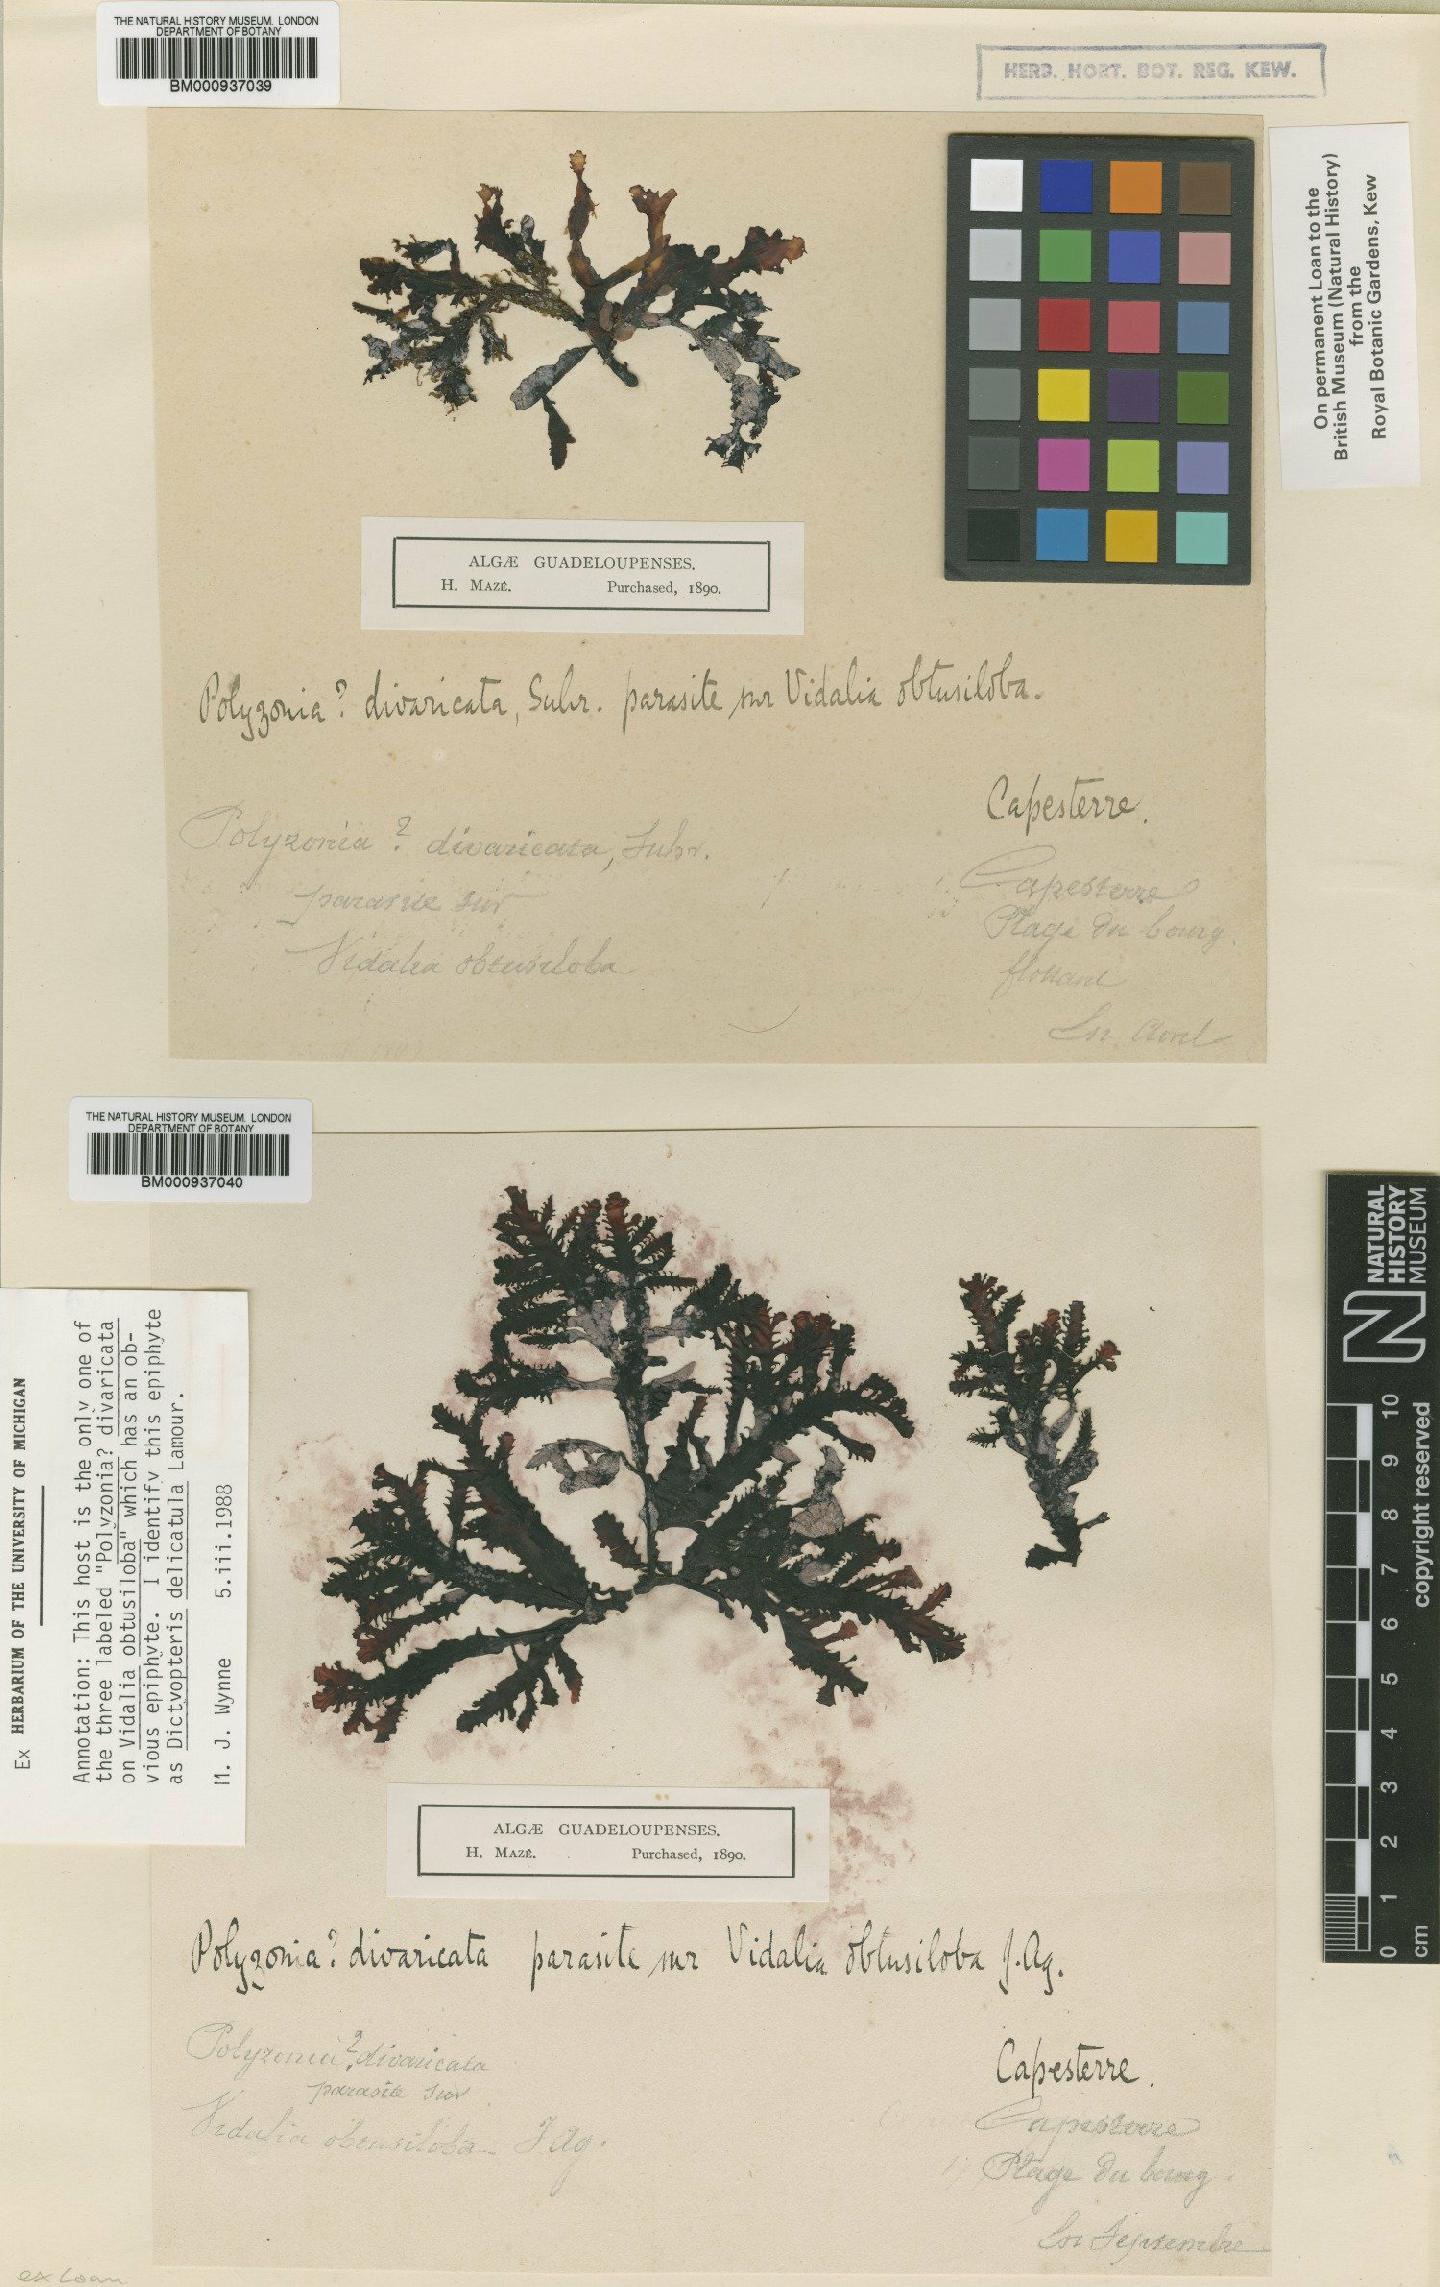 To NHMUK collection (Polysiphonia divaricata (C.Agardh) Spreng.; Syntype; NHMUK:ecatalogue:465587)